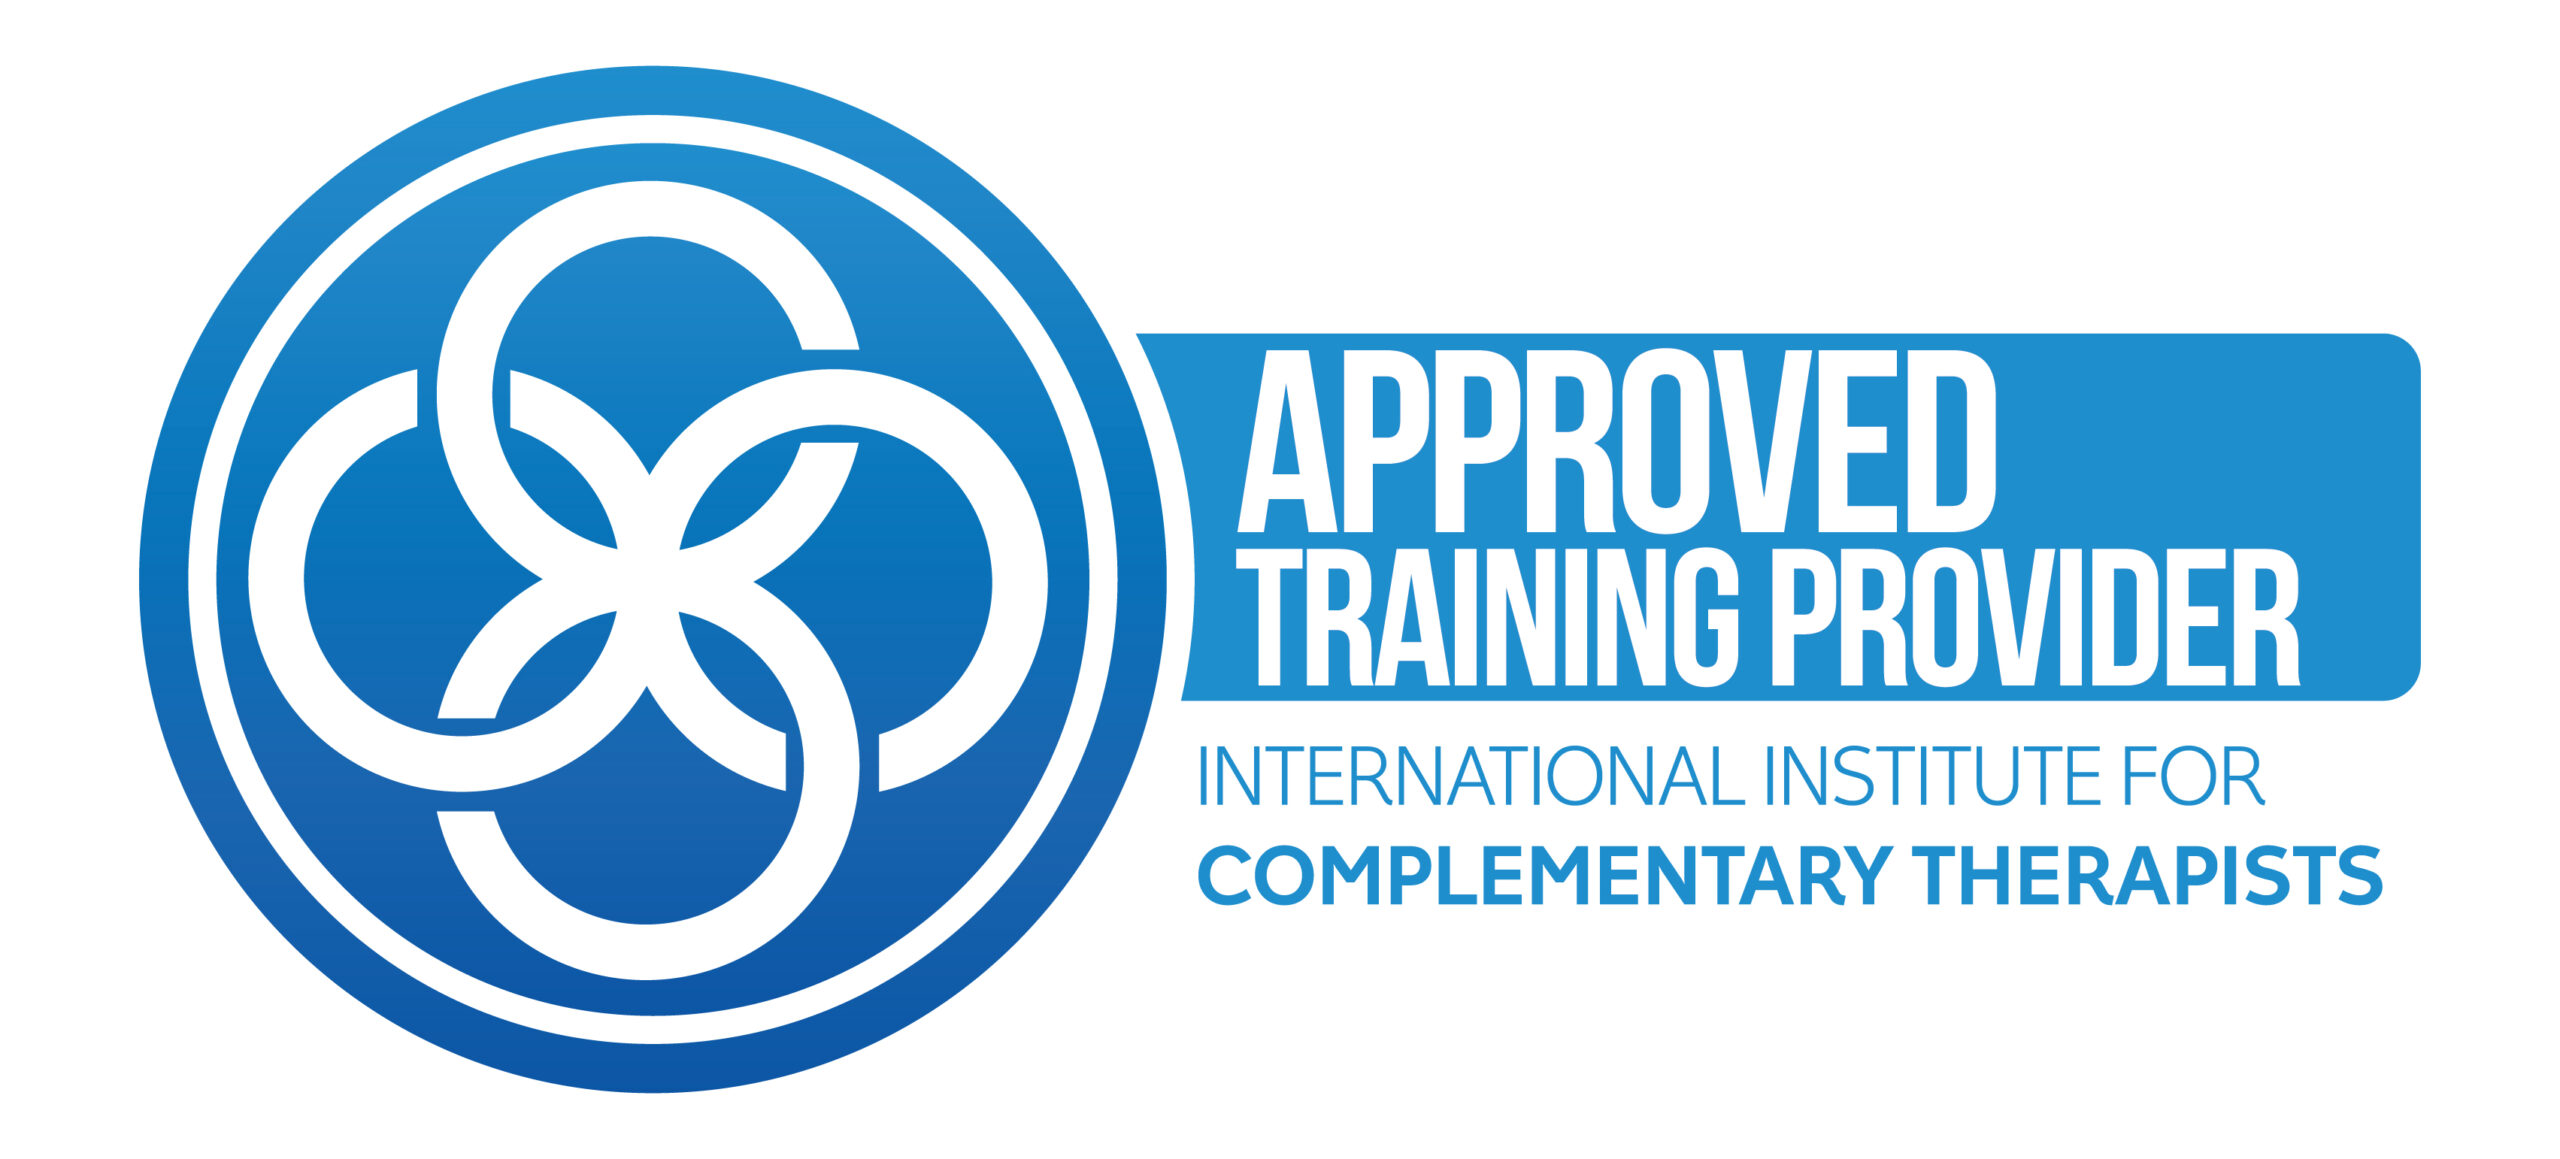 Somos un proveedor de capacitación aprobado por el Instituto Internacional de Terapeutas Complementarios.